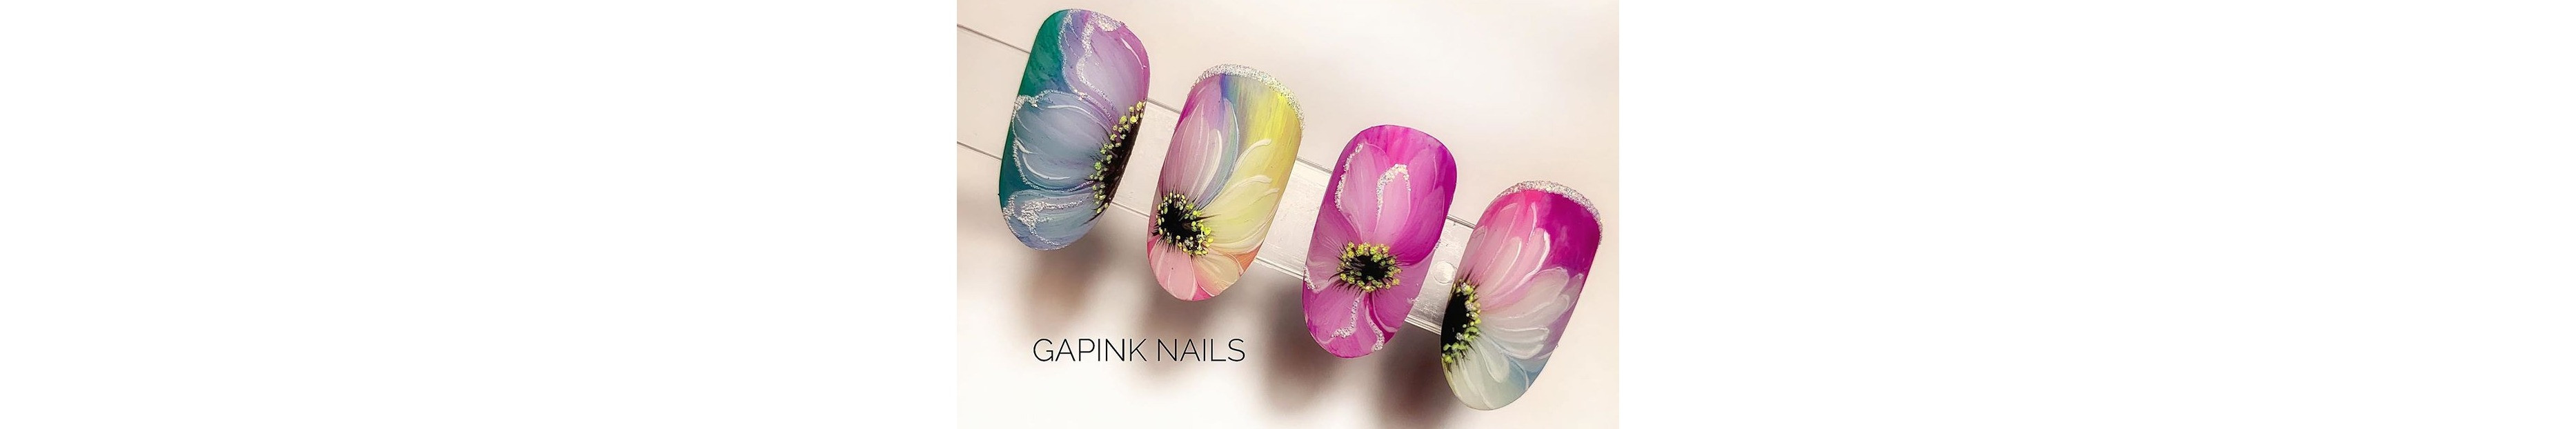 Pink Nails centro de uñas, manicuras, pedicuras, extensiones